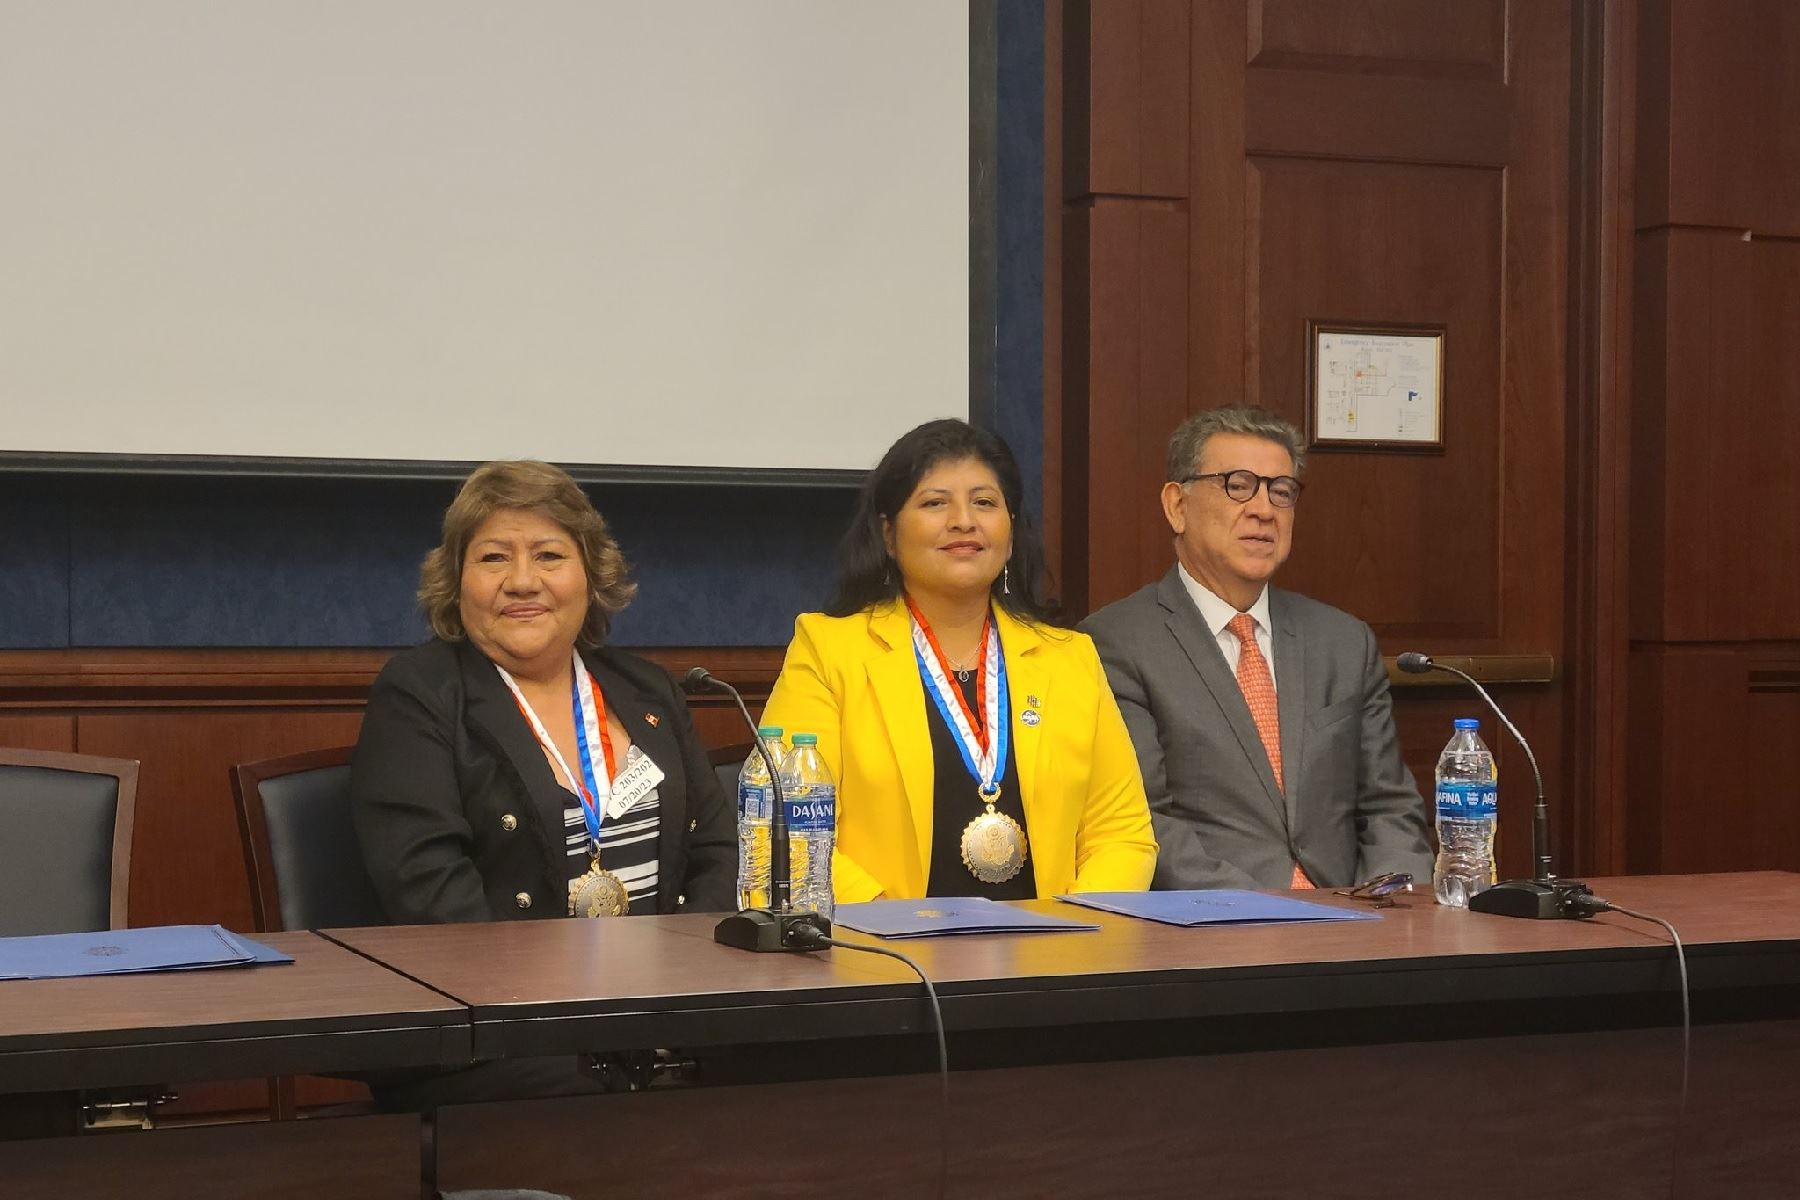 El reconocimiento a la ingeniera peruana Aracely Quispe fue realizado en una ceremonia en el senado norteamericano.